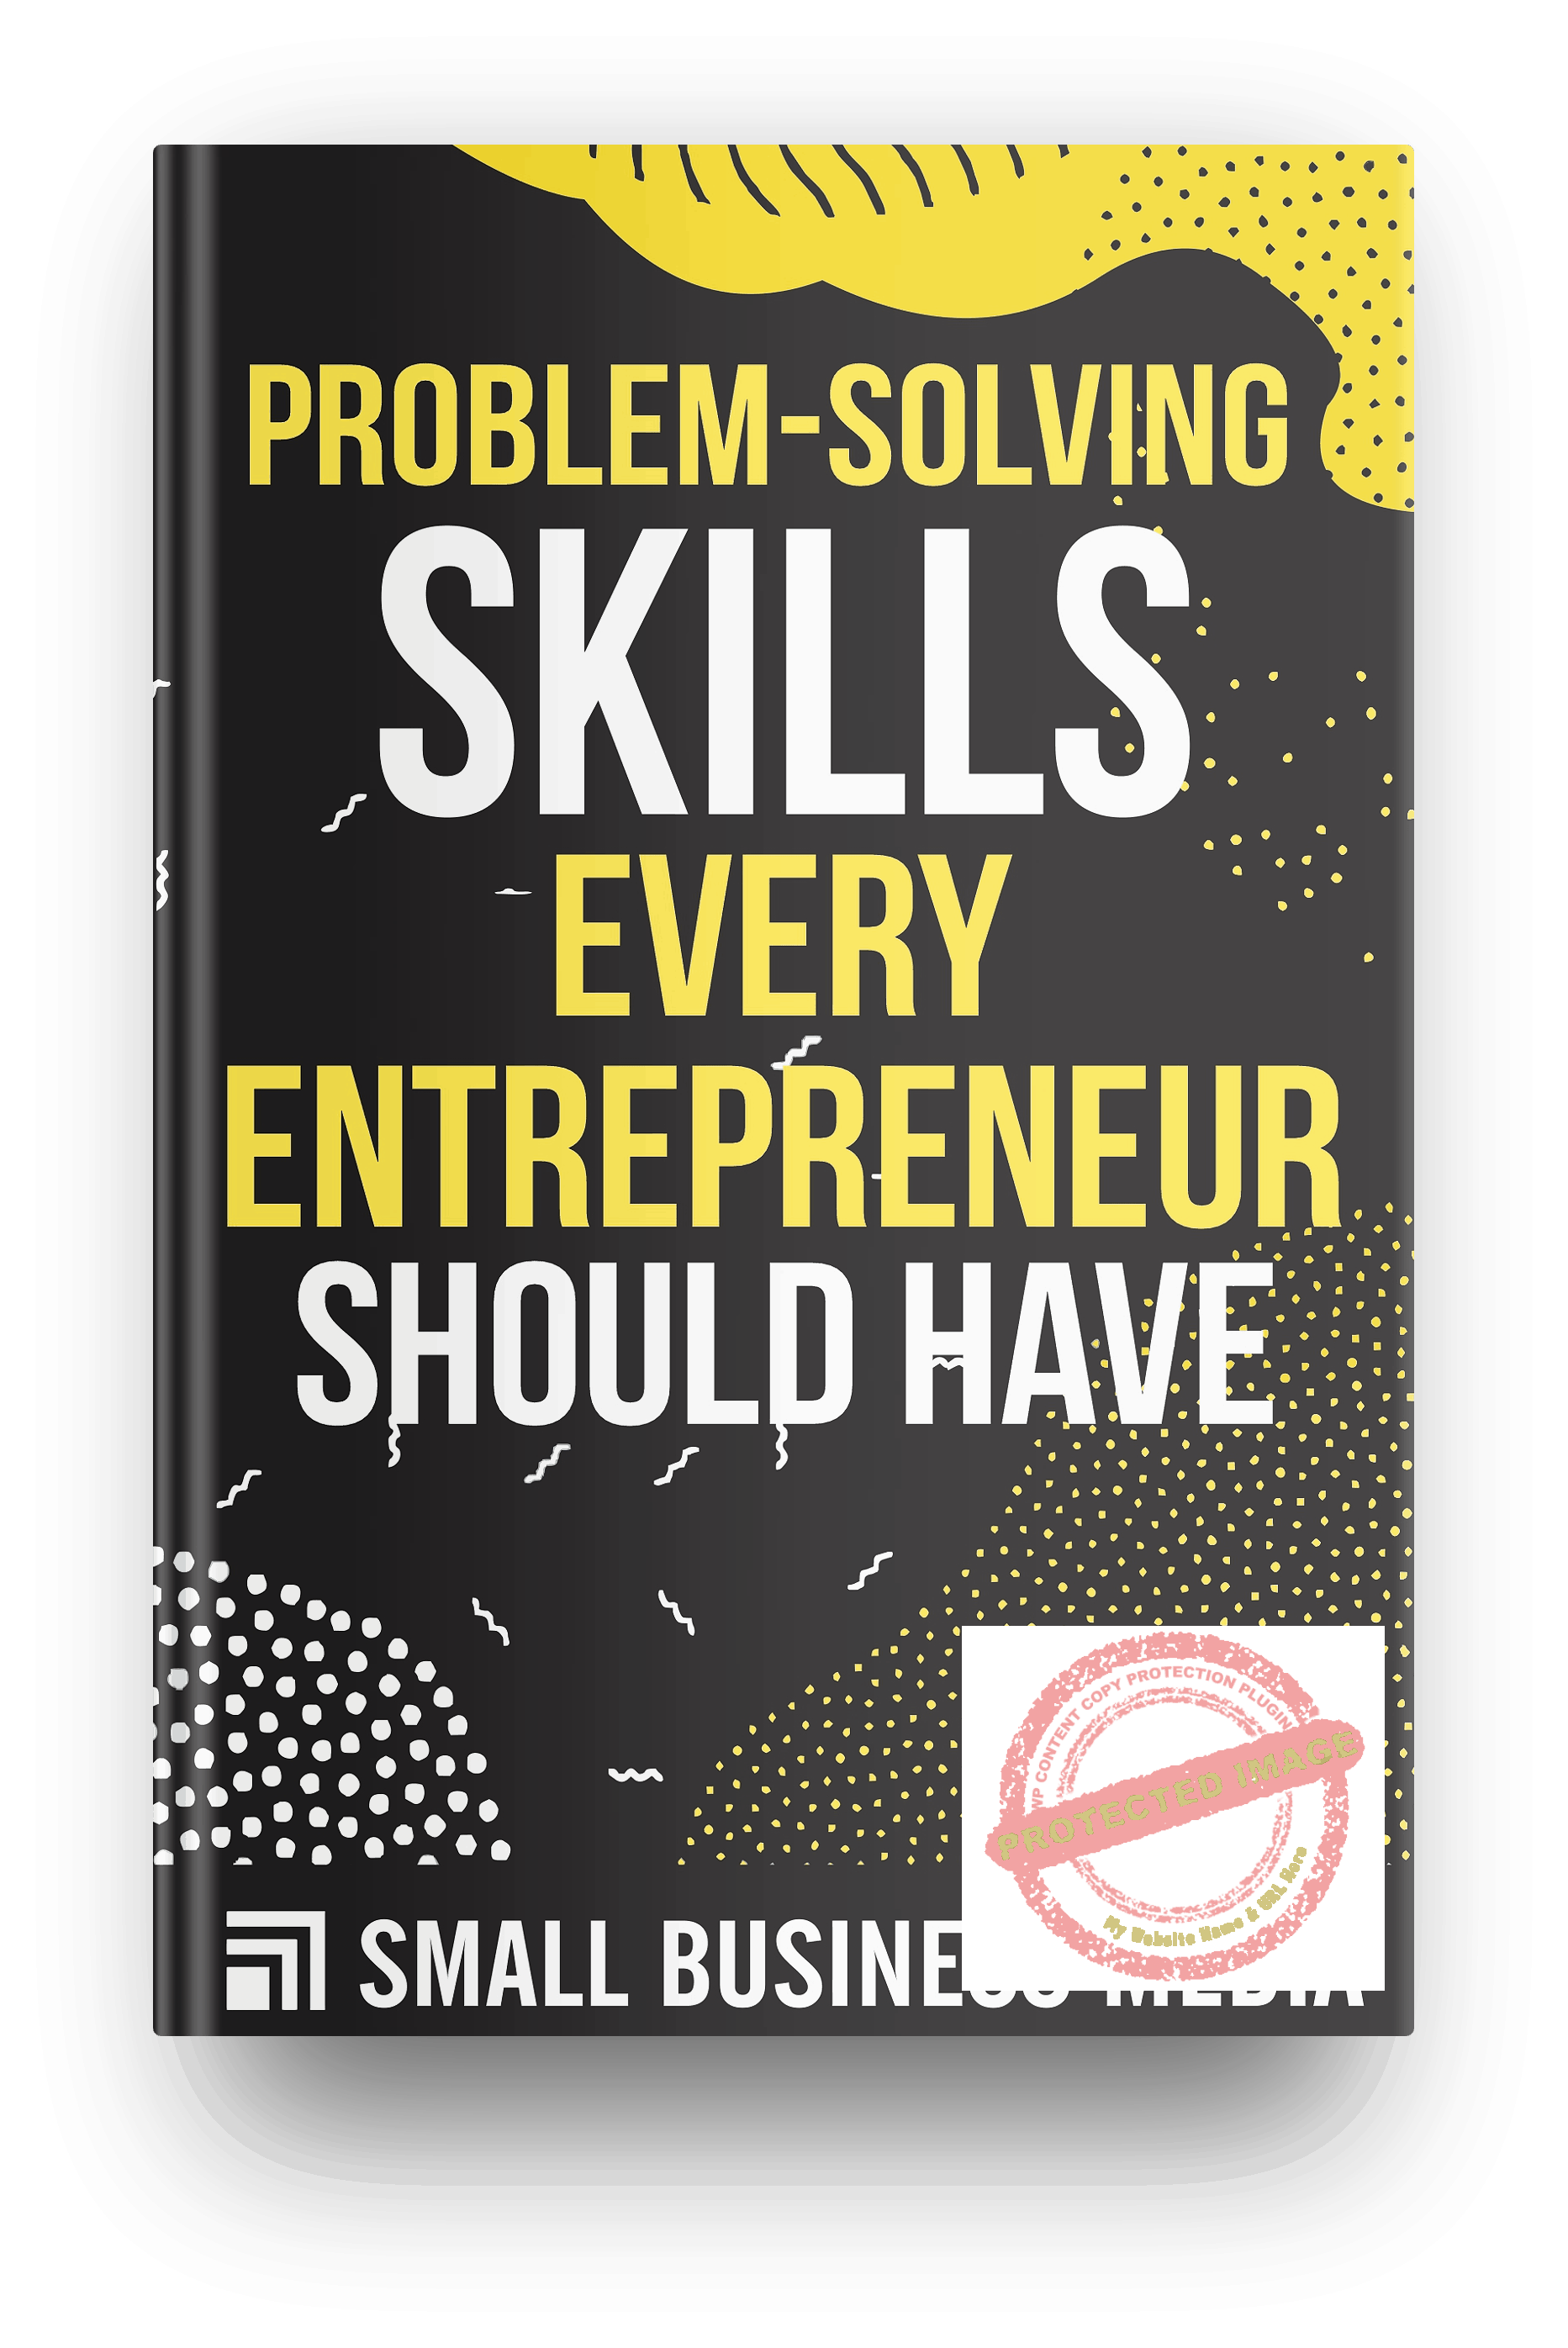 Problem-Solving Skills Every Entrepreneur Should Have